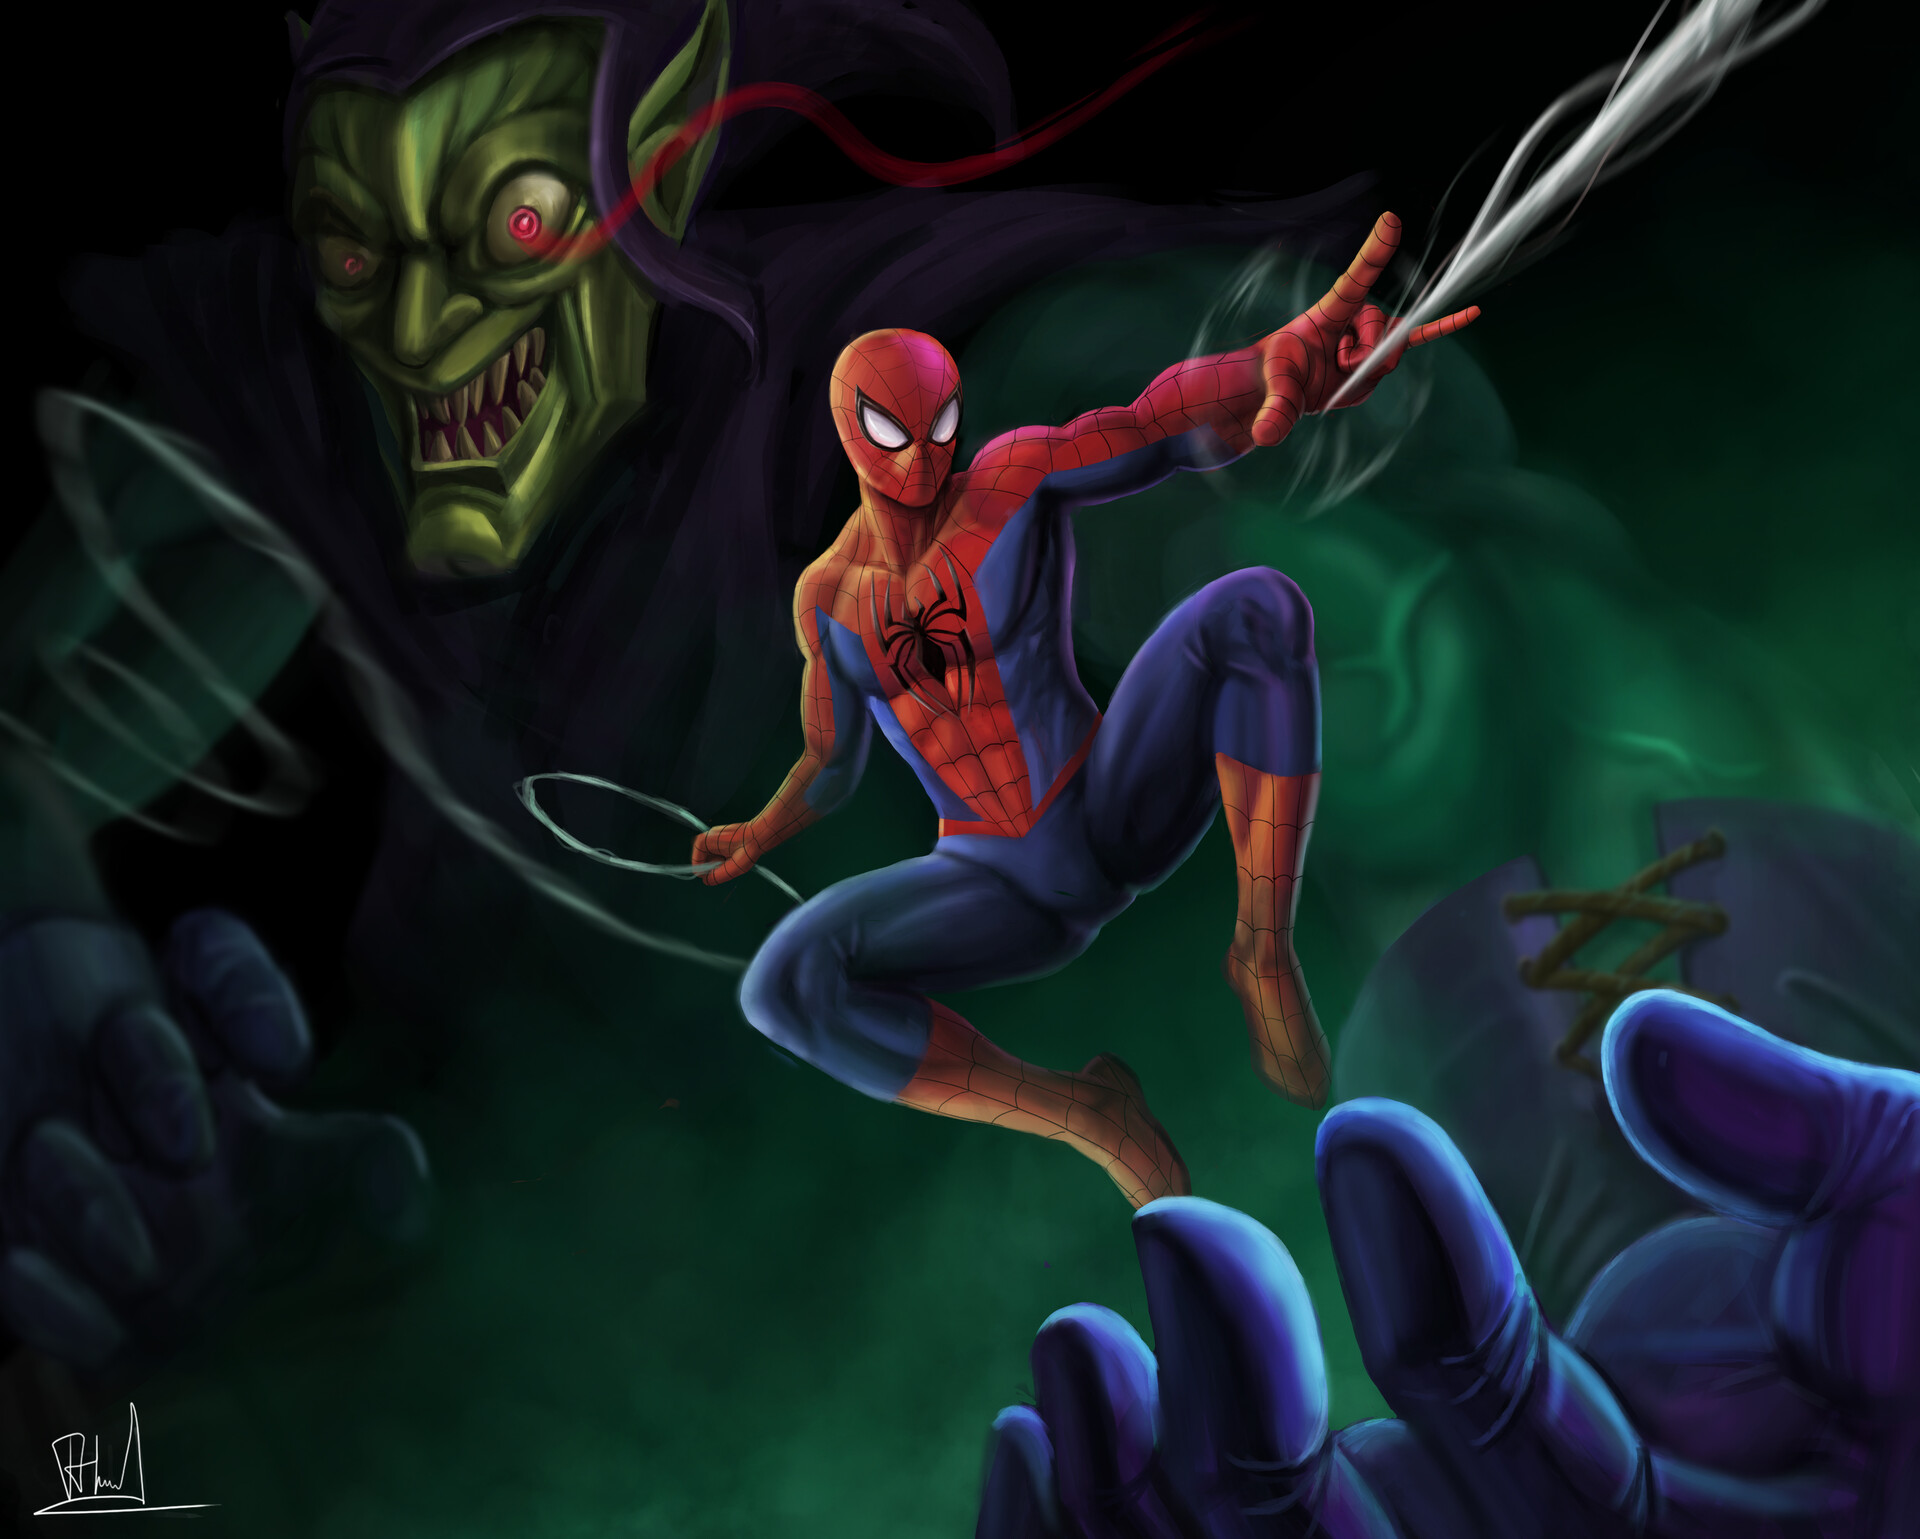 ArtStation - Spiderman vs green goblin